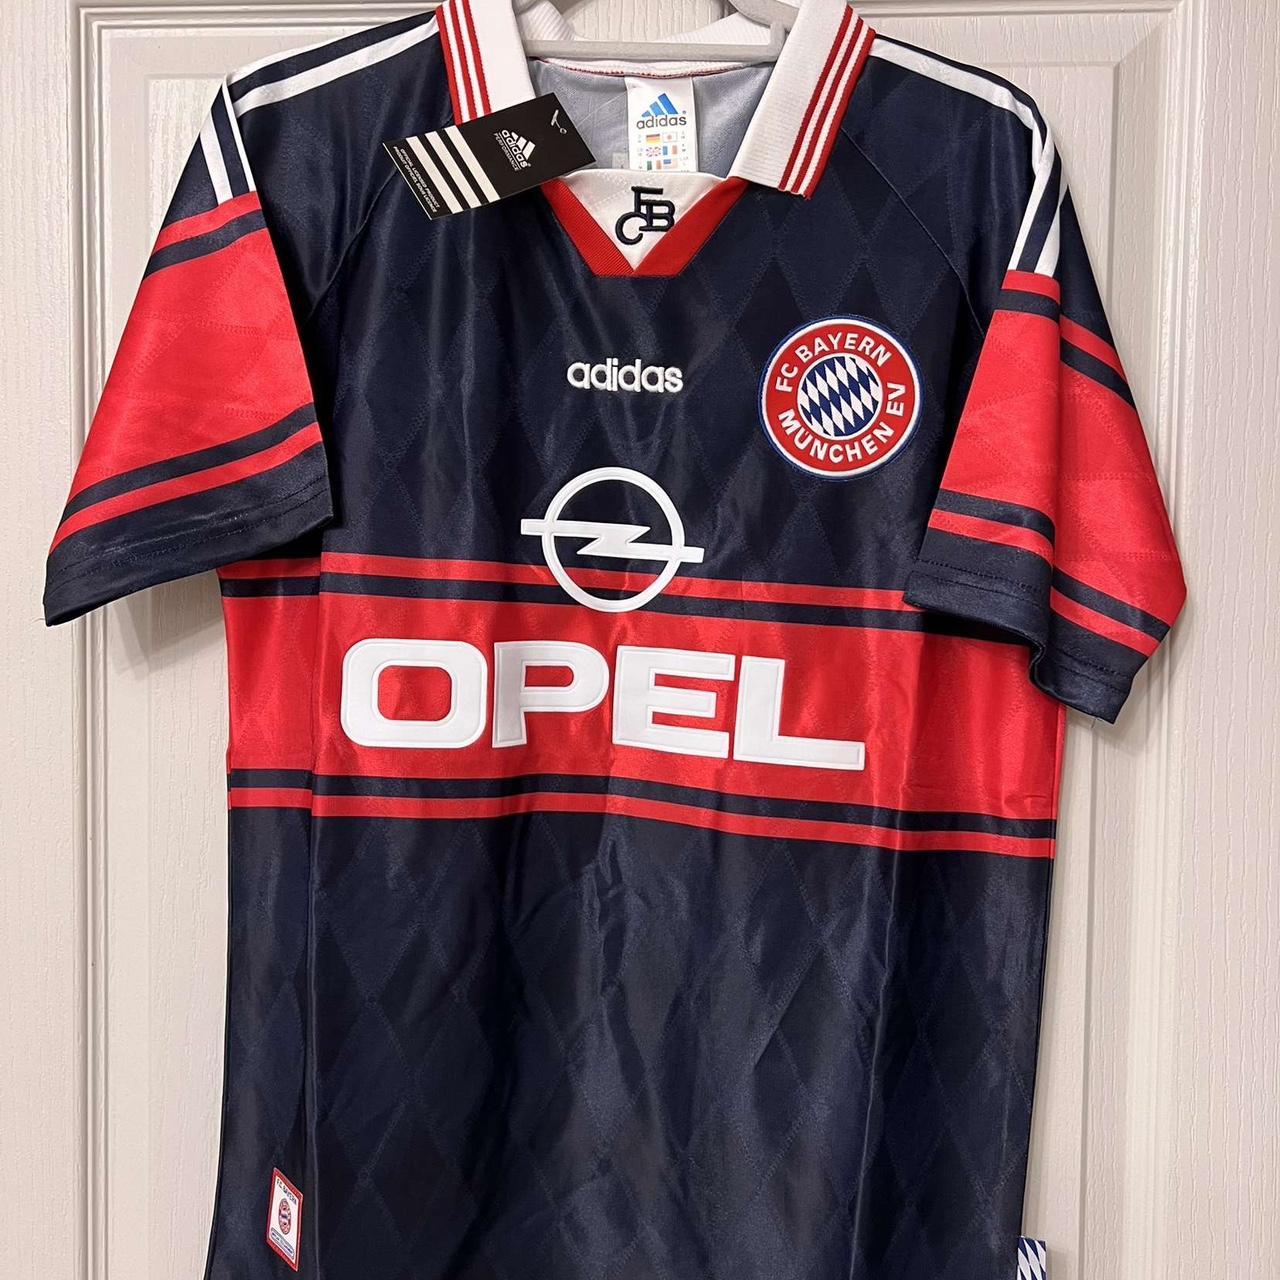 bayern munich 1997 jersey